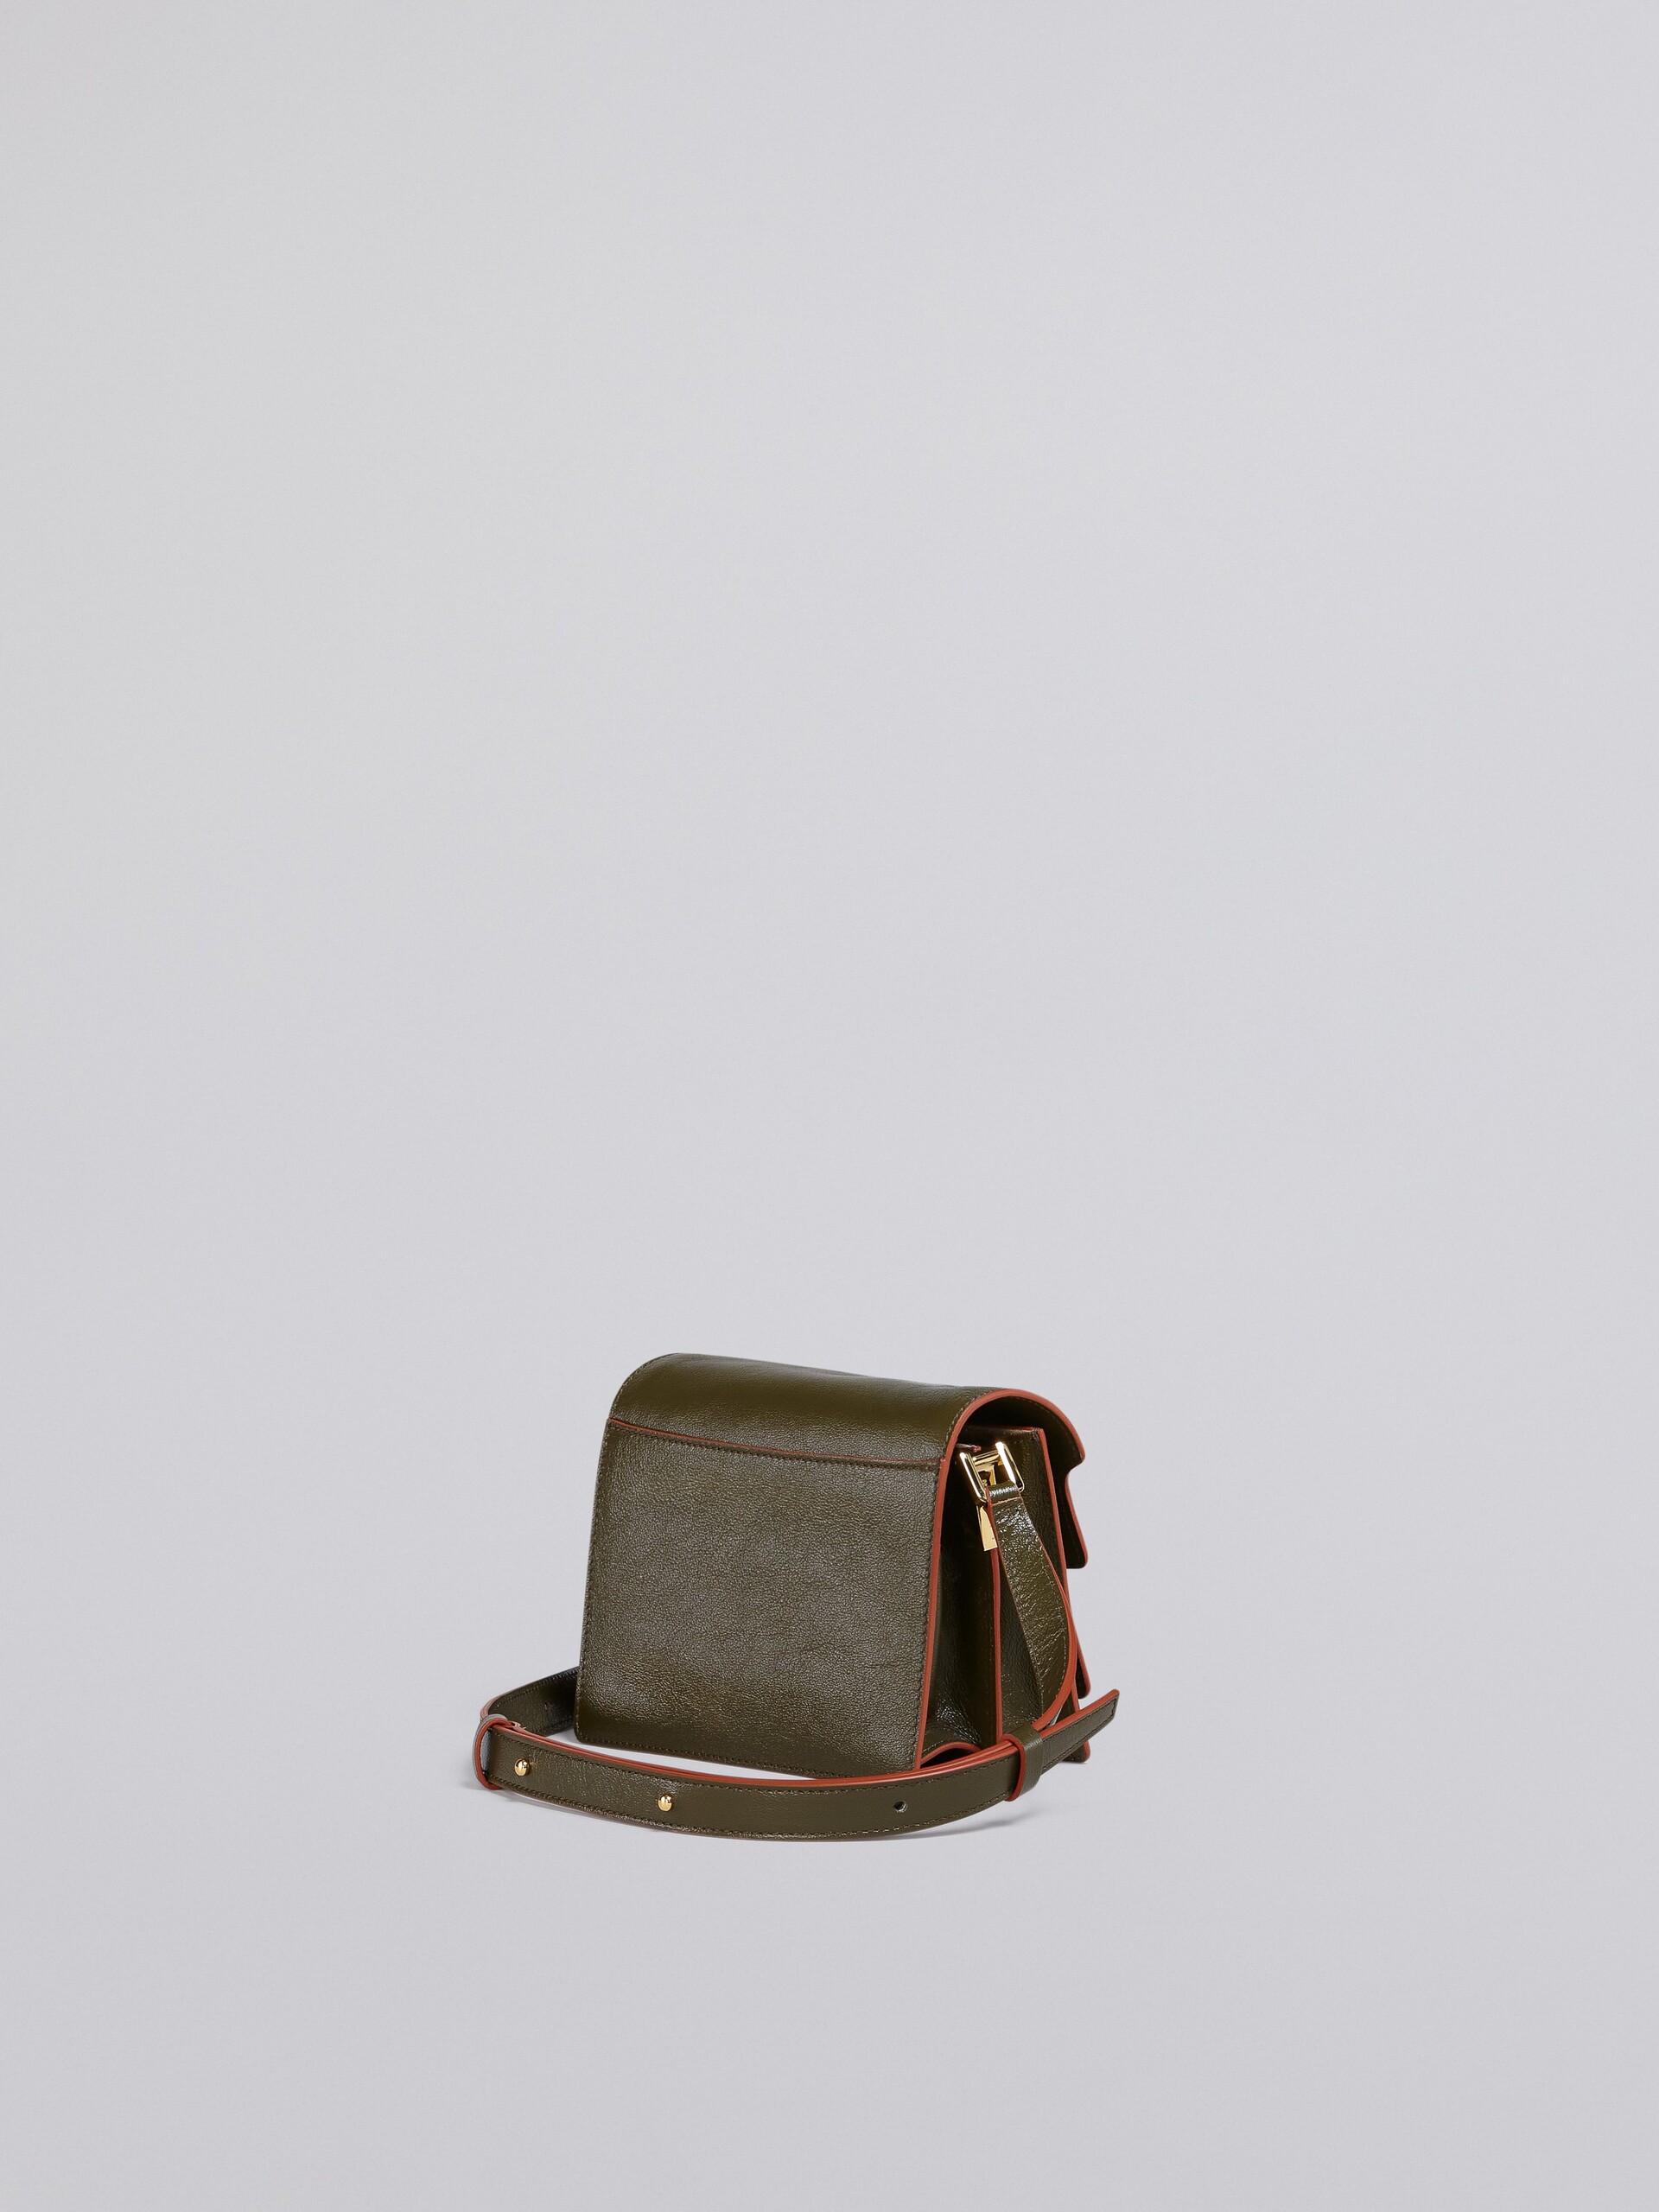 TRUNK SOFT bag mini in pelle verde - Borse a spalla - Image 2